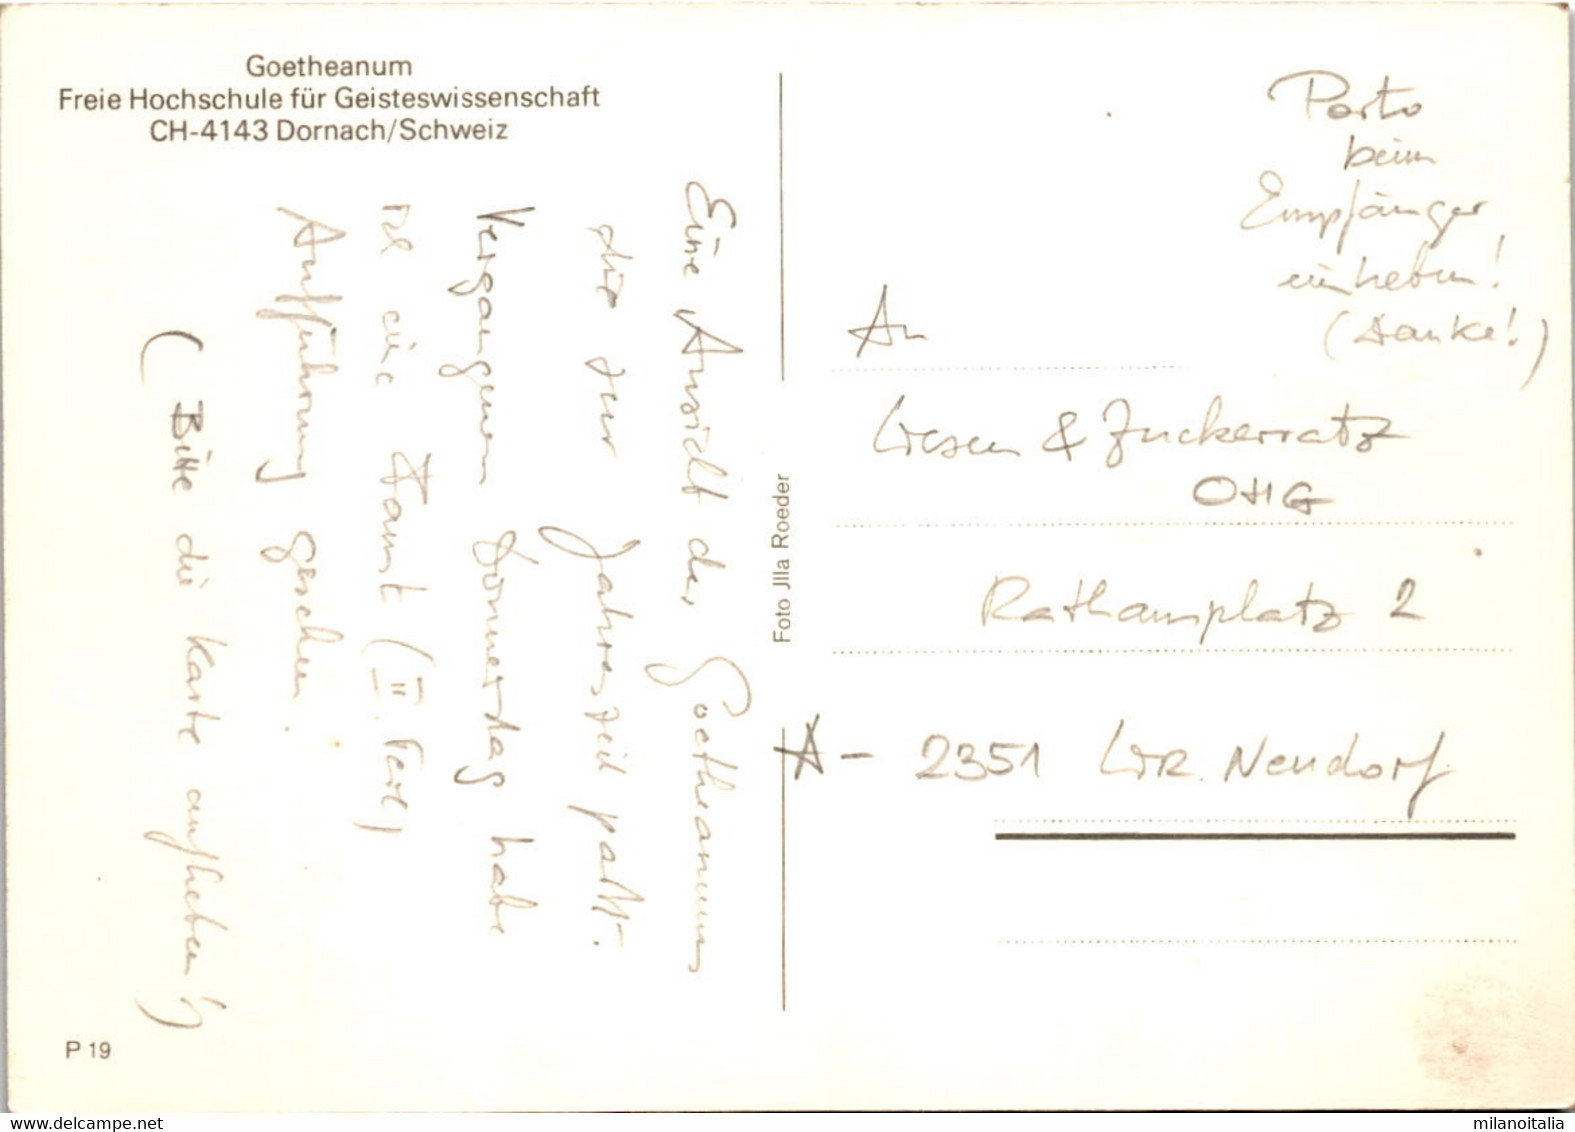 Goetheanum, Dornach (19) - Dornach